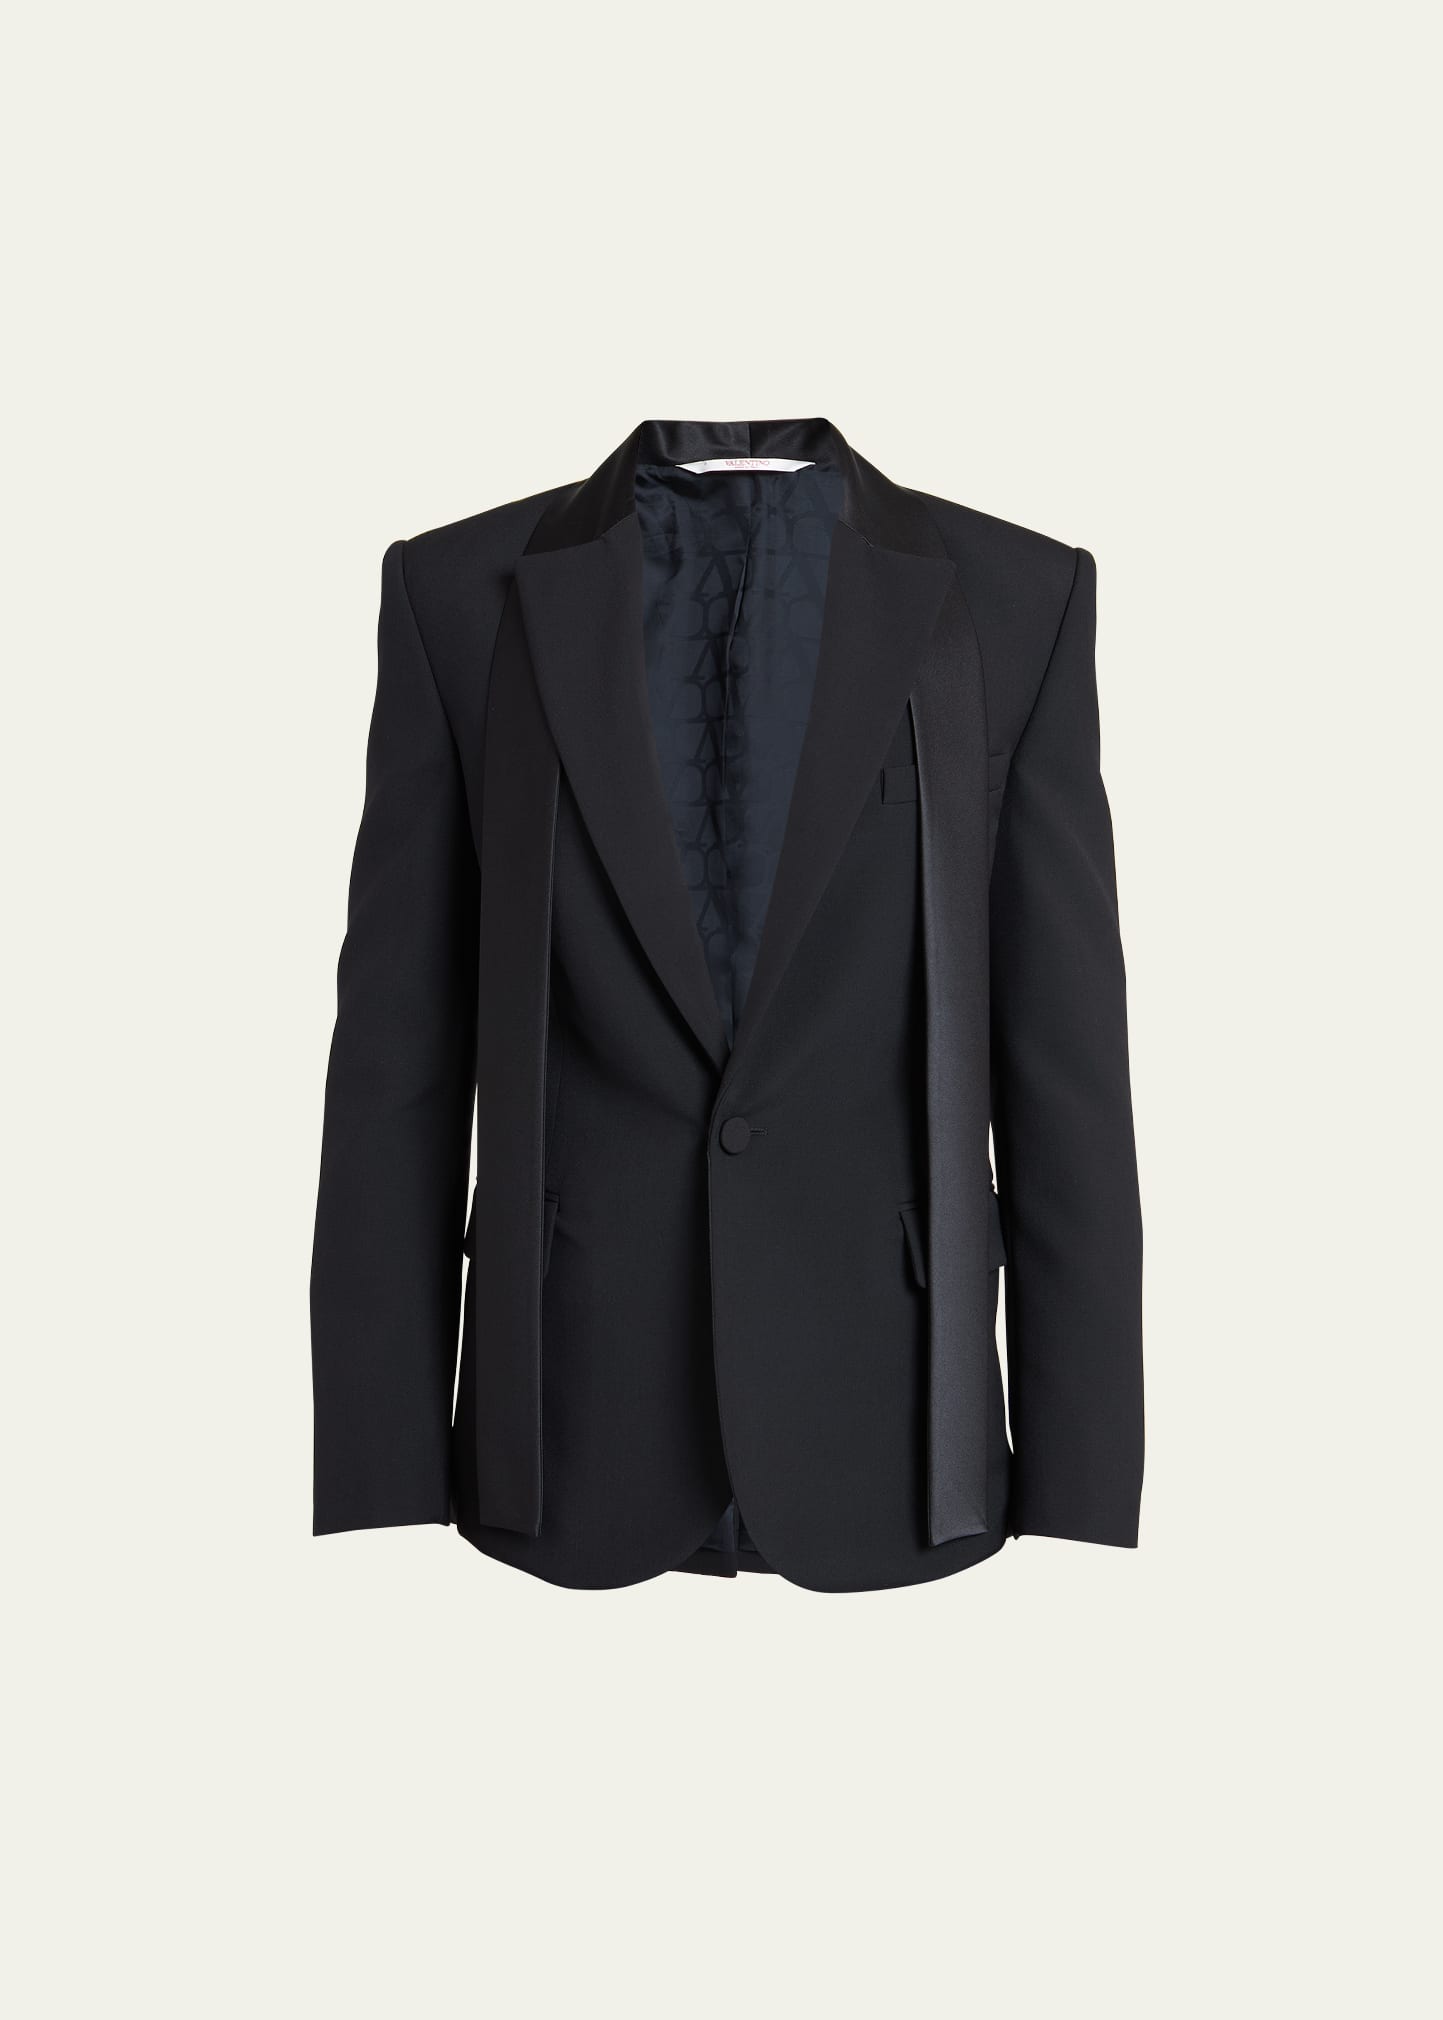 Valentino Men's Tuxedo Jacket With Satin Strings In Black